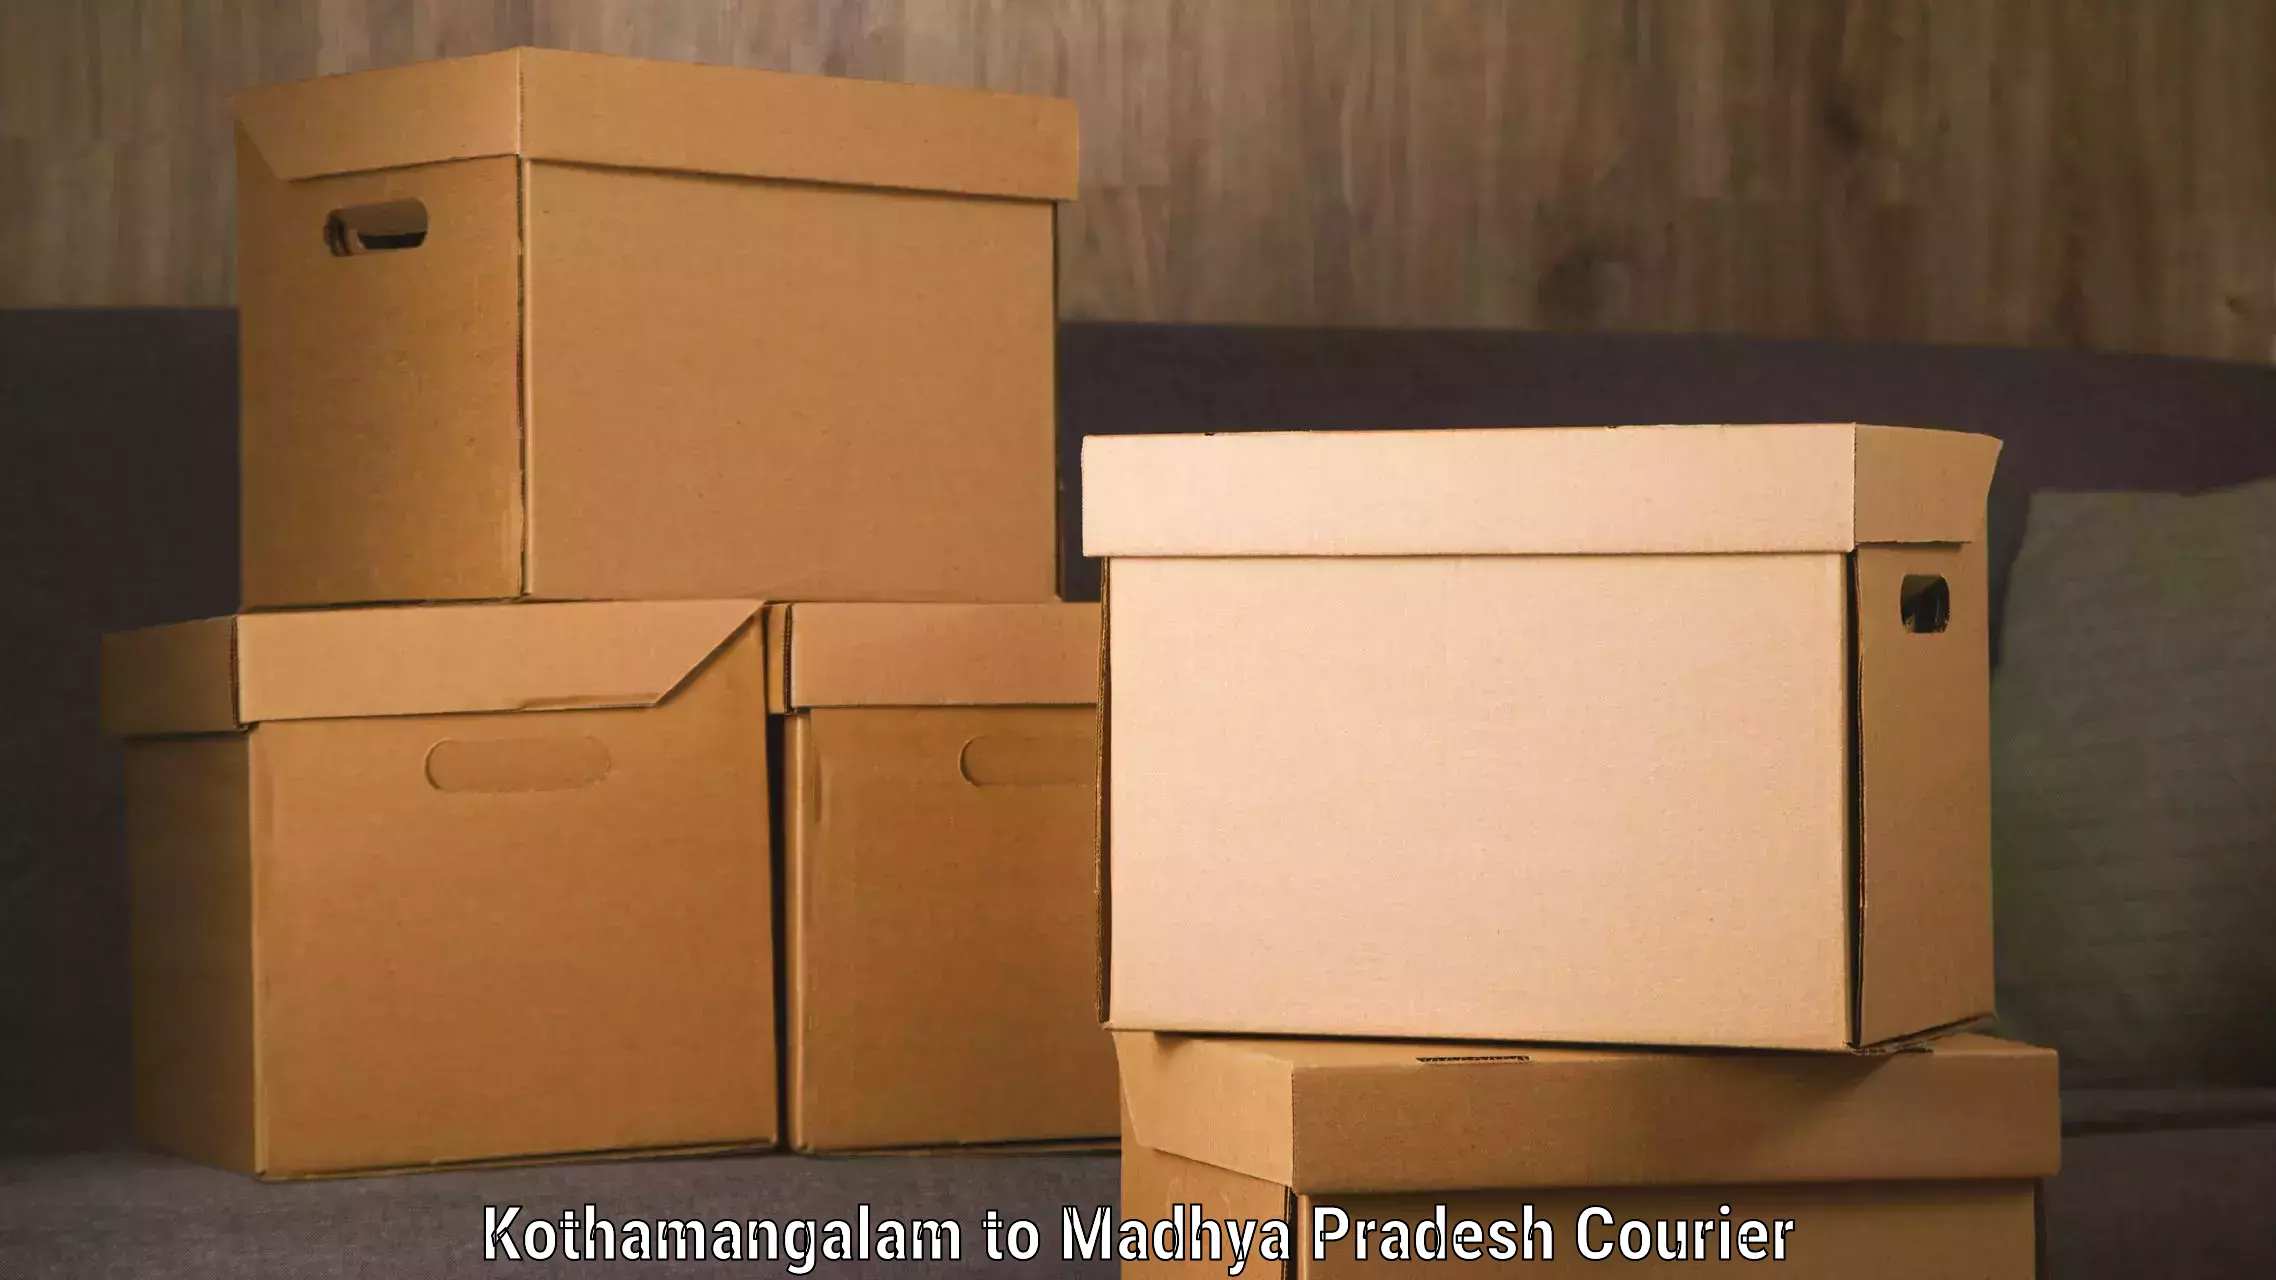 Express logistics providers Kothamangalam to Raipur Karchuliyan